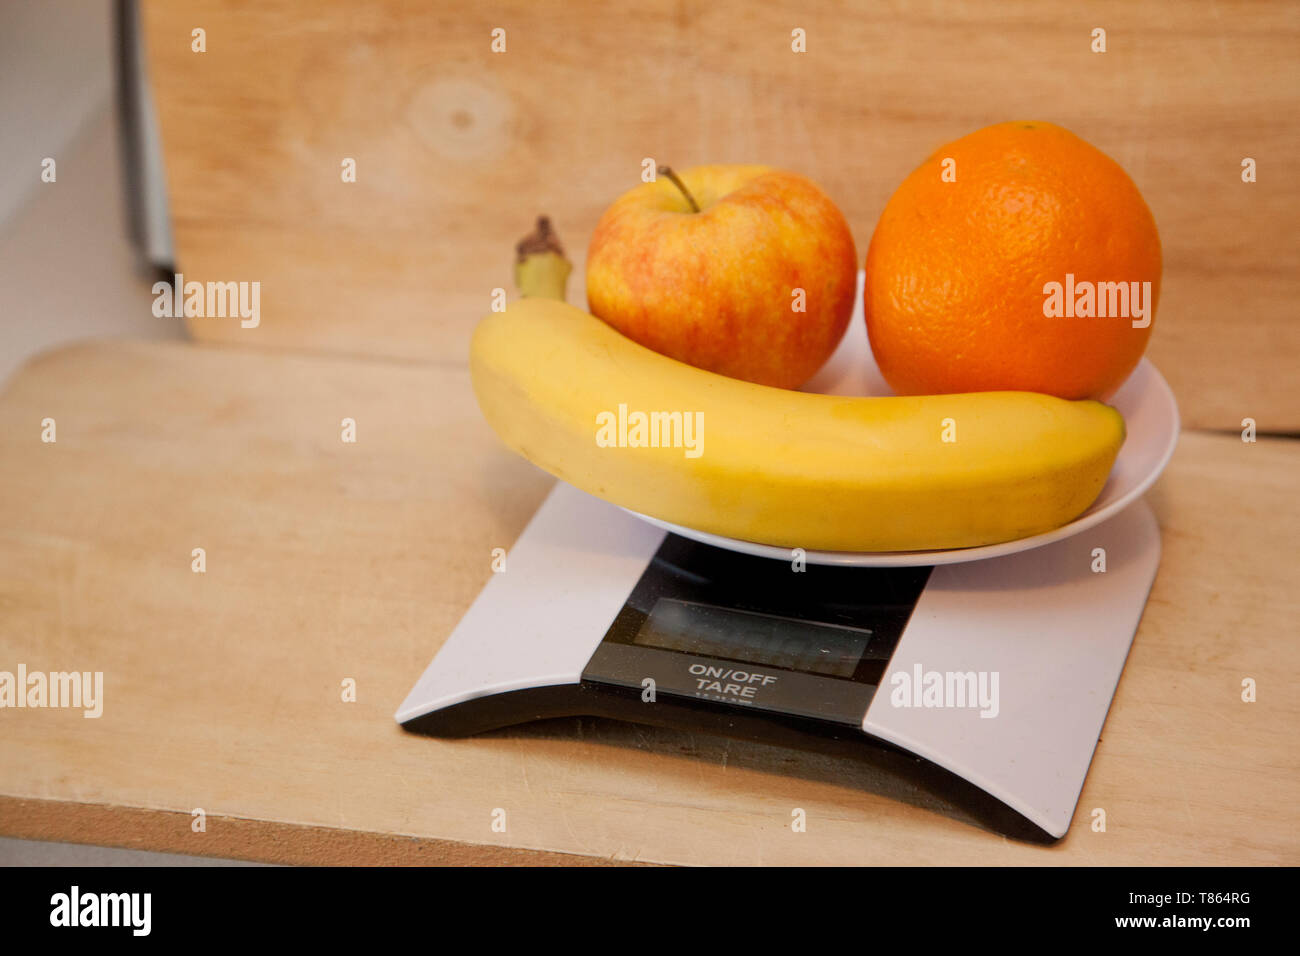 Une pomme, une banane et d'orange sur une échelle numérique à peser Banque D'Images